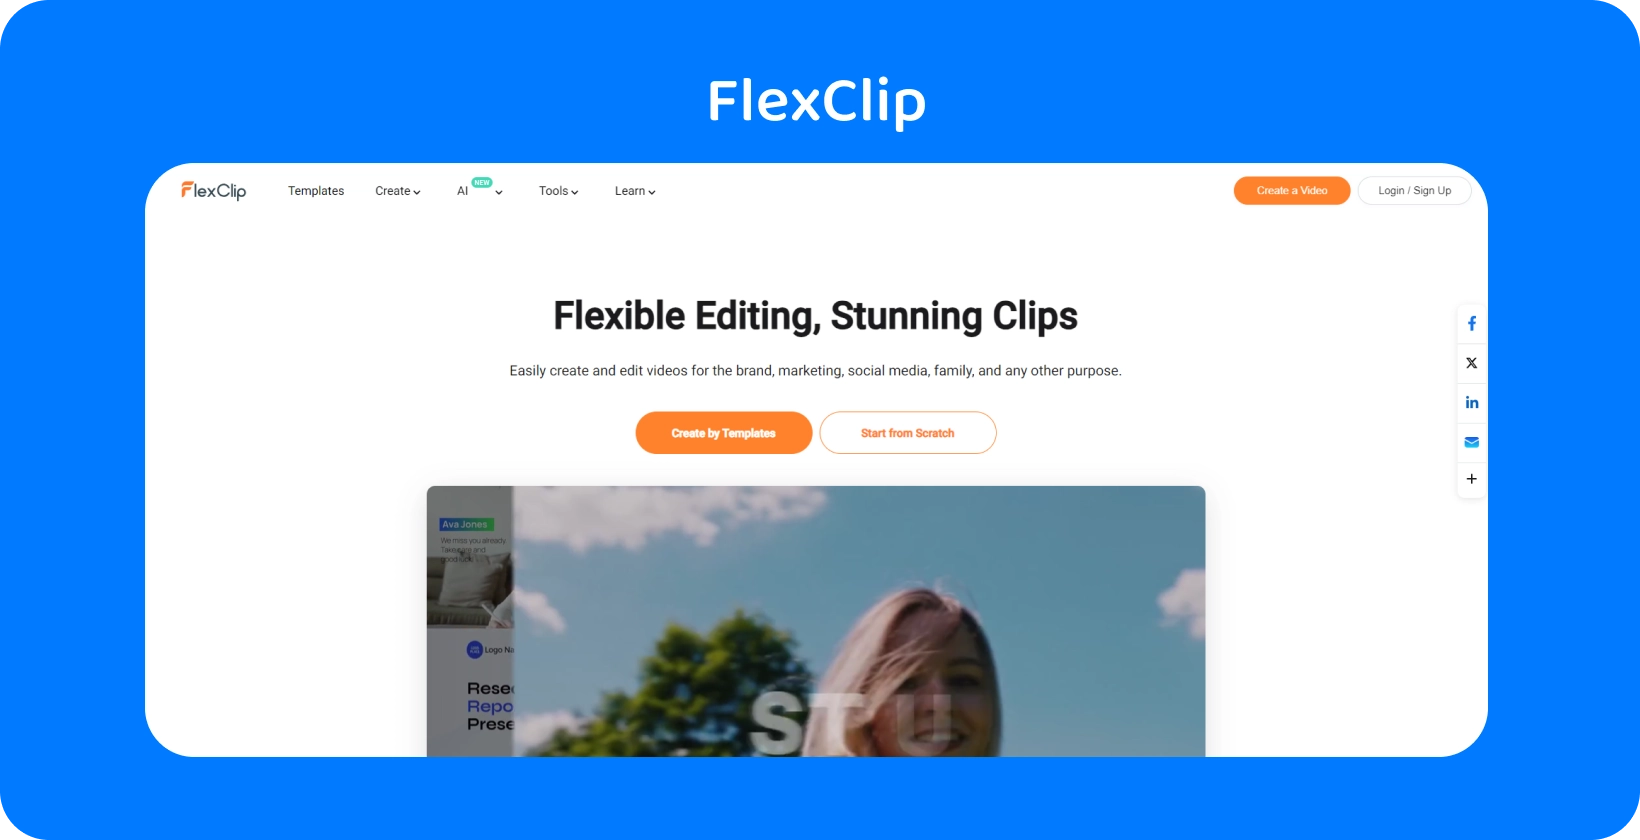 A interface do Text to Speech Video Maker da FlexClip mostra uma maneira simples e eficiente de converter texto em fala AI realista.